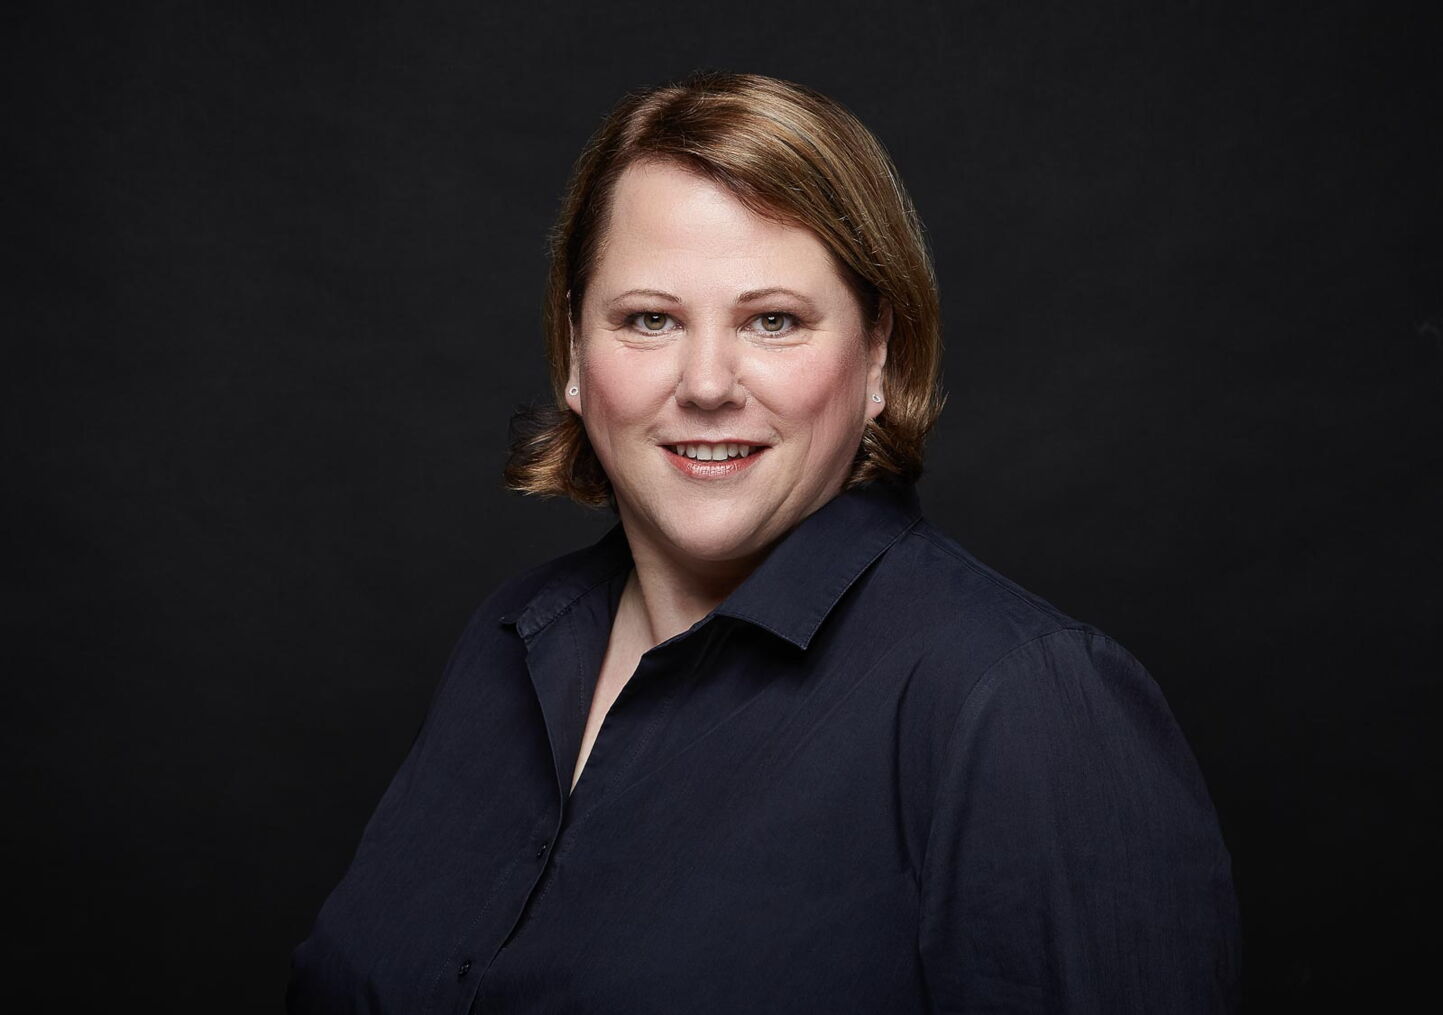 Businessfotografie: Frau in dunkelblauem Hemd vor schwarzem Hintergrund